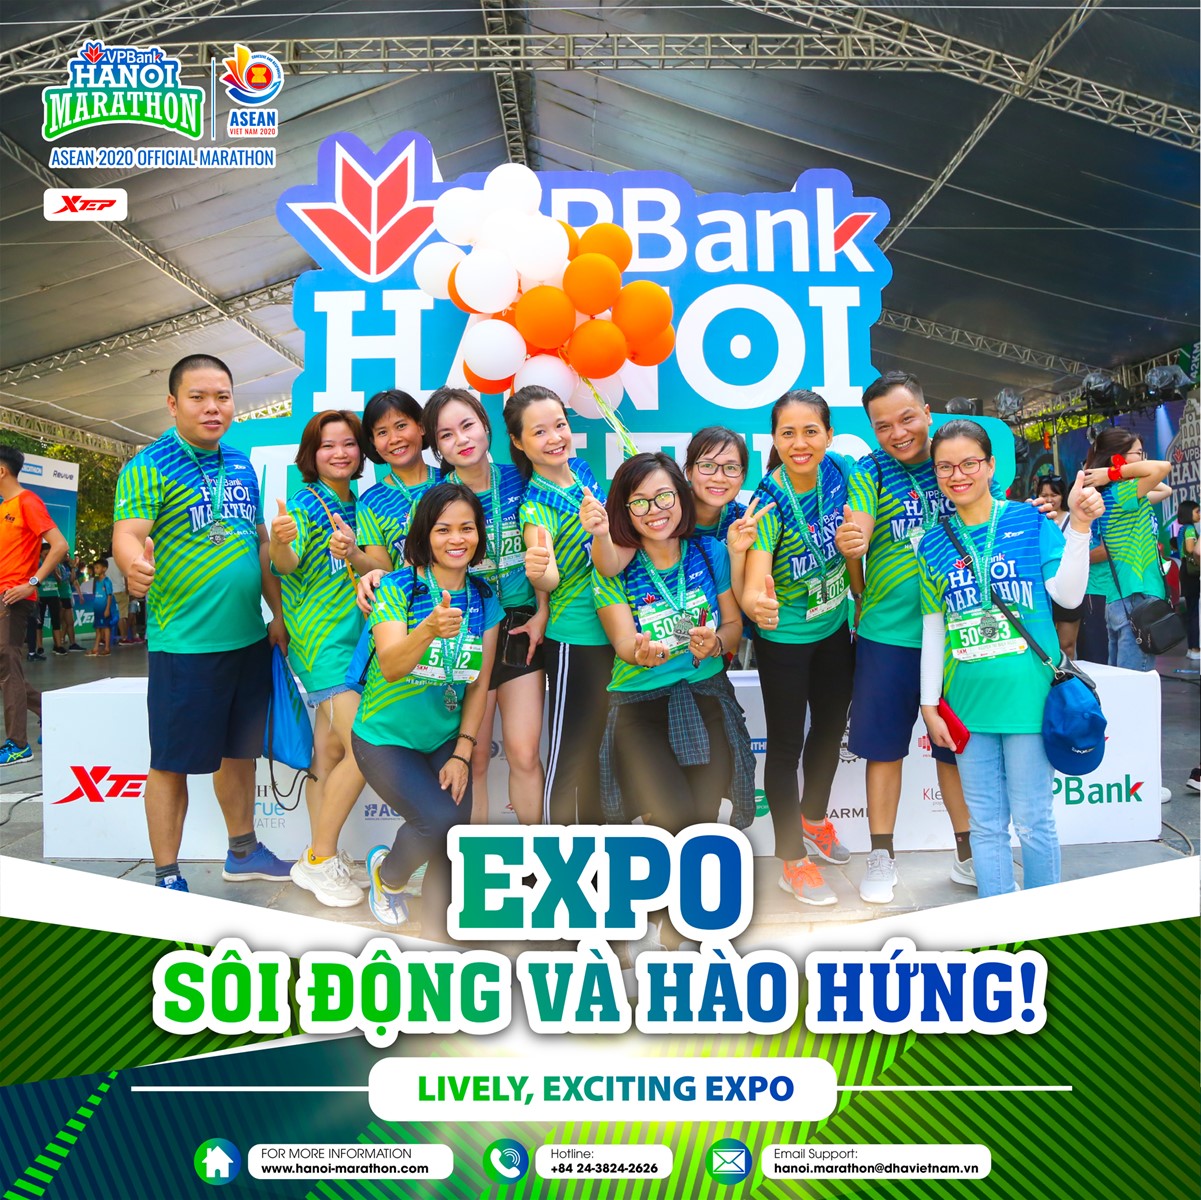 VPBank Hanoi Marathon to Open Expo-Entertainment Zone